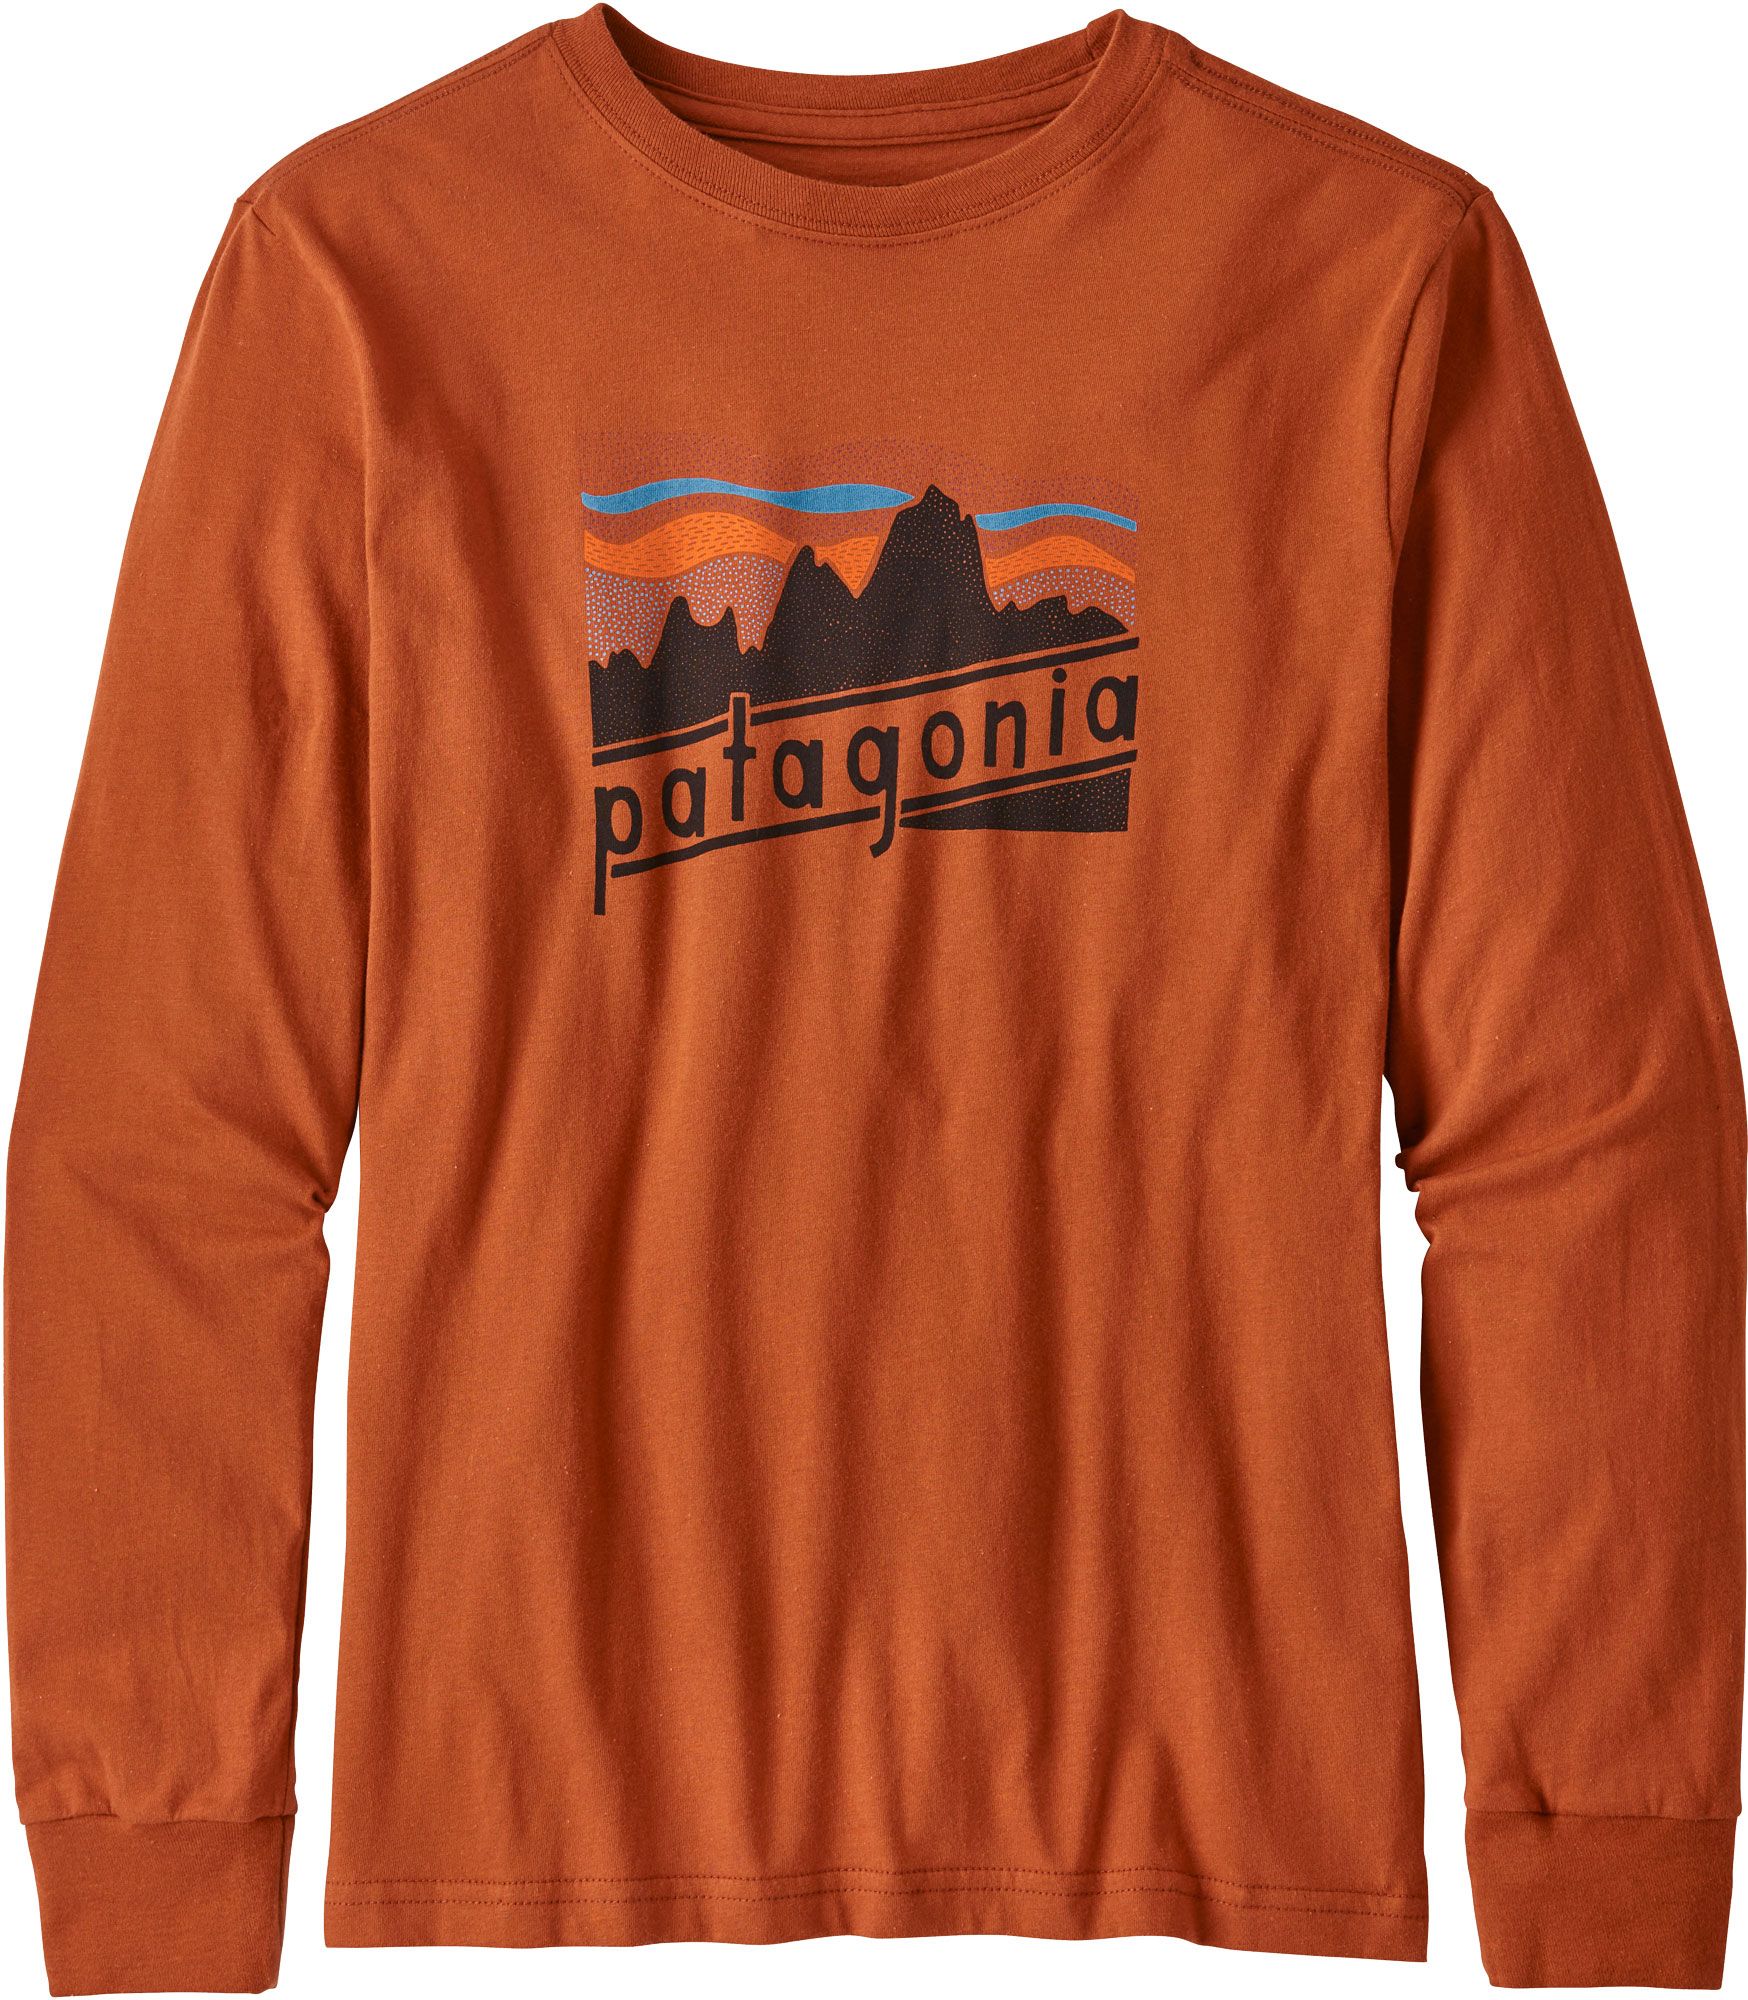 patagonia orange t shirt